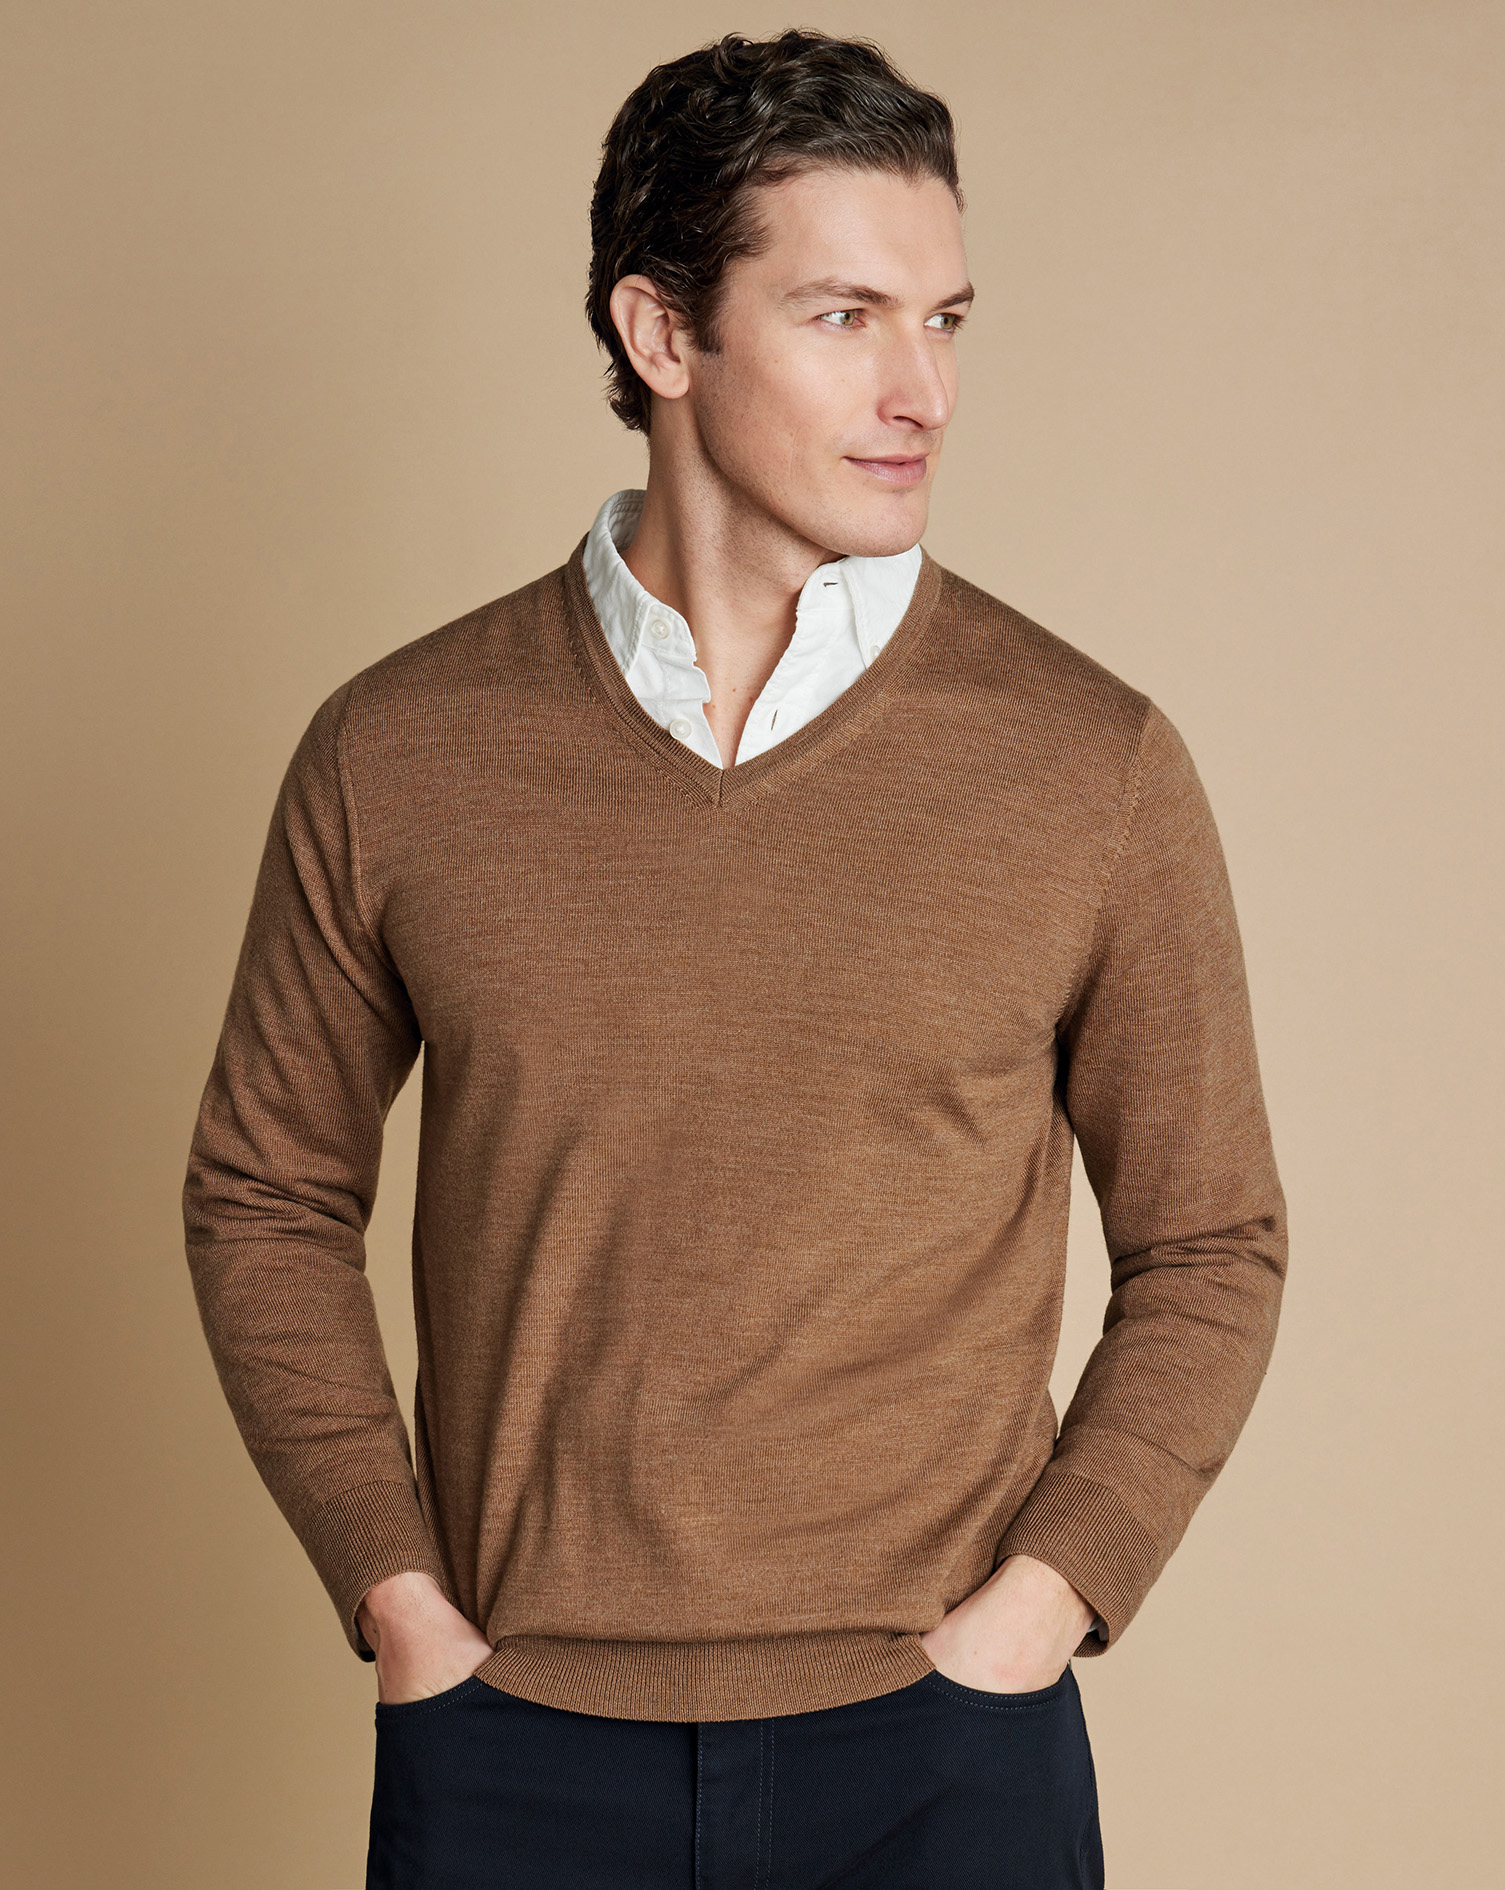 Men's Charles Tyrwhitt Merino V-Neck Sweater - Sand Brown Neutral Size Small Wool
